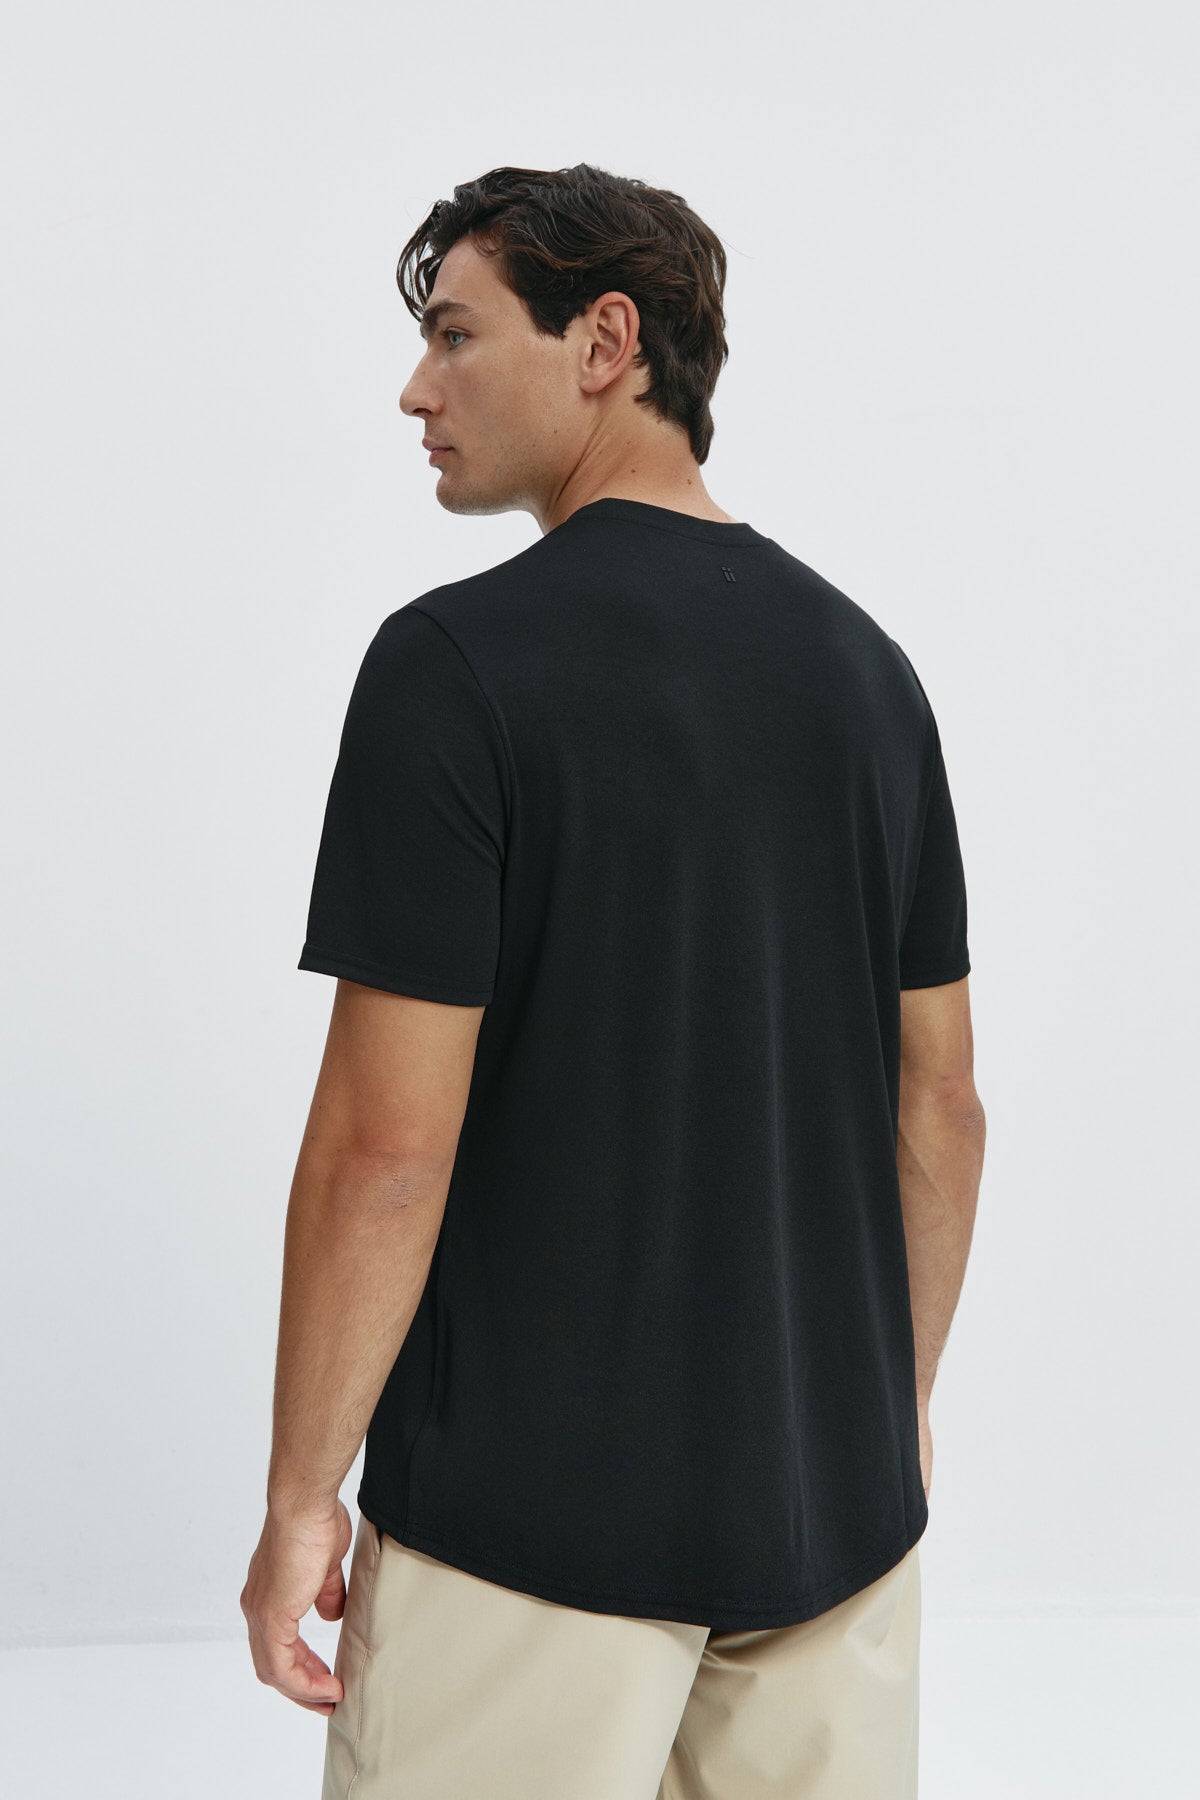 Camiseta de hombre en negro de Sepiia, suave y cómoda, perfecta para cualquier ocasión. Foto espalda